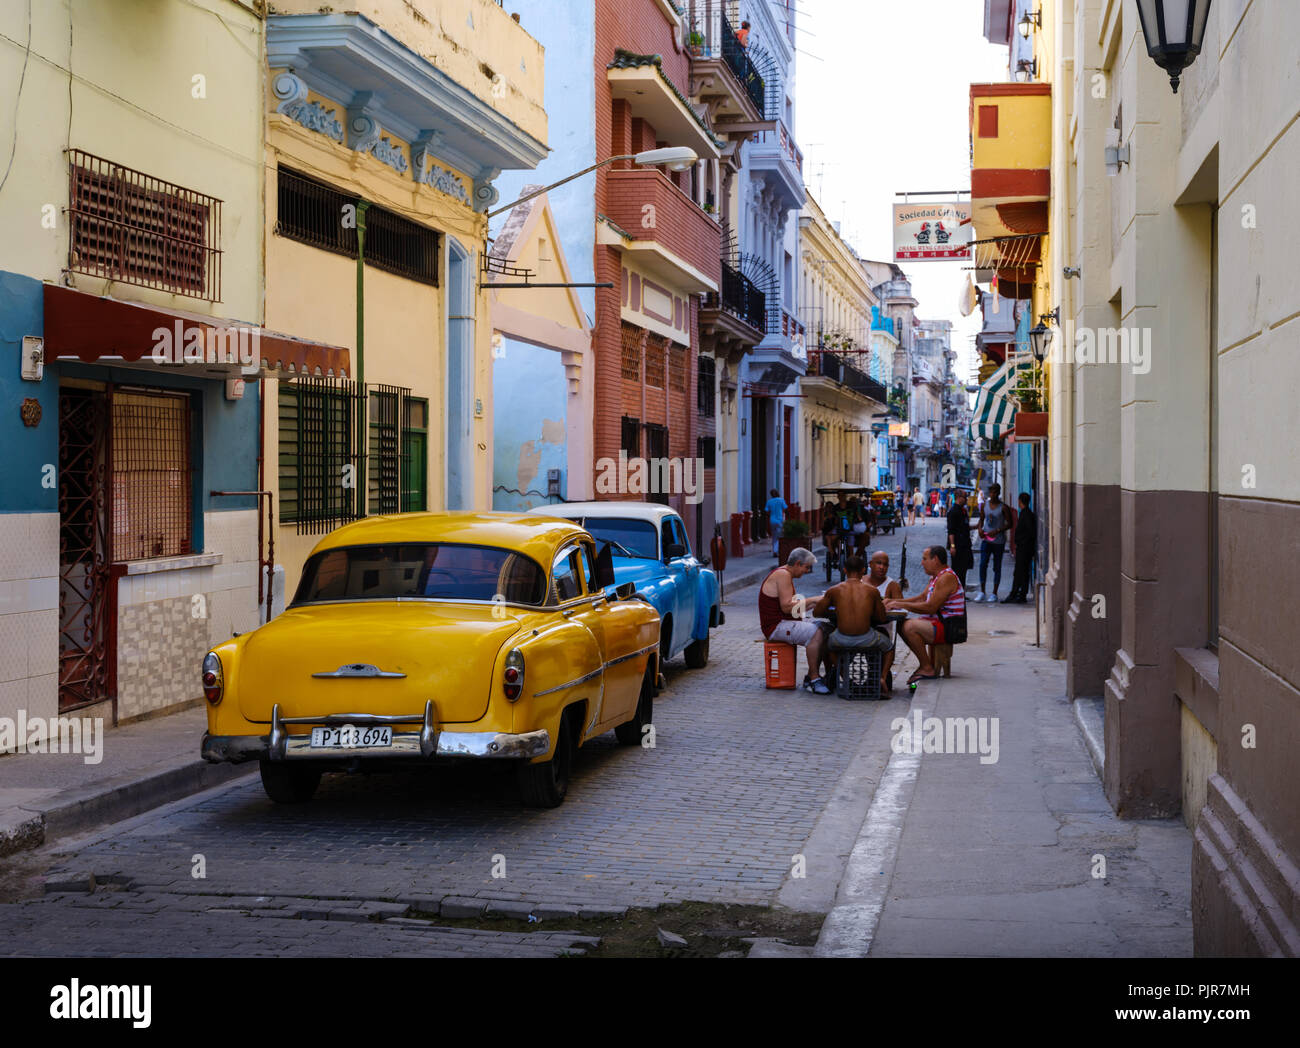 L'Avana, Cuba - CIRCA NEL MAGGIO 2017: vecchie automobili classiche nelle strade di l'Avana con persone che giocano a Domino. Foto Stock